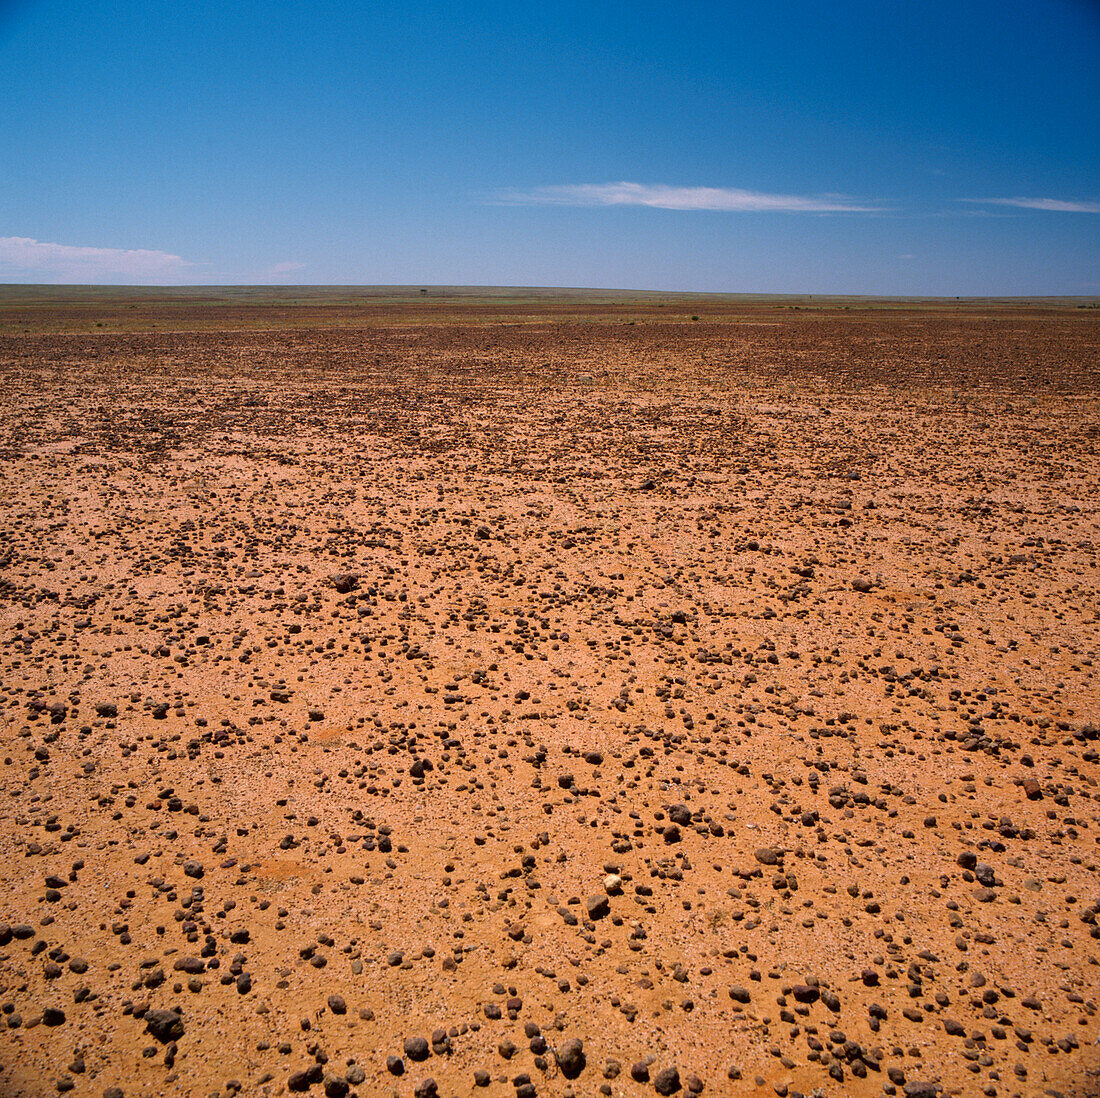 Sturt Stoney Wüste, Australien